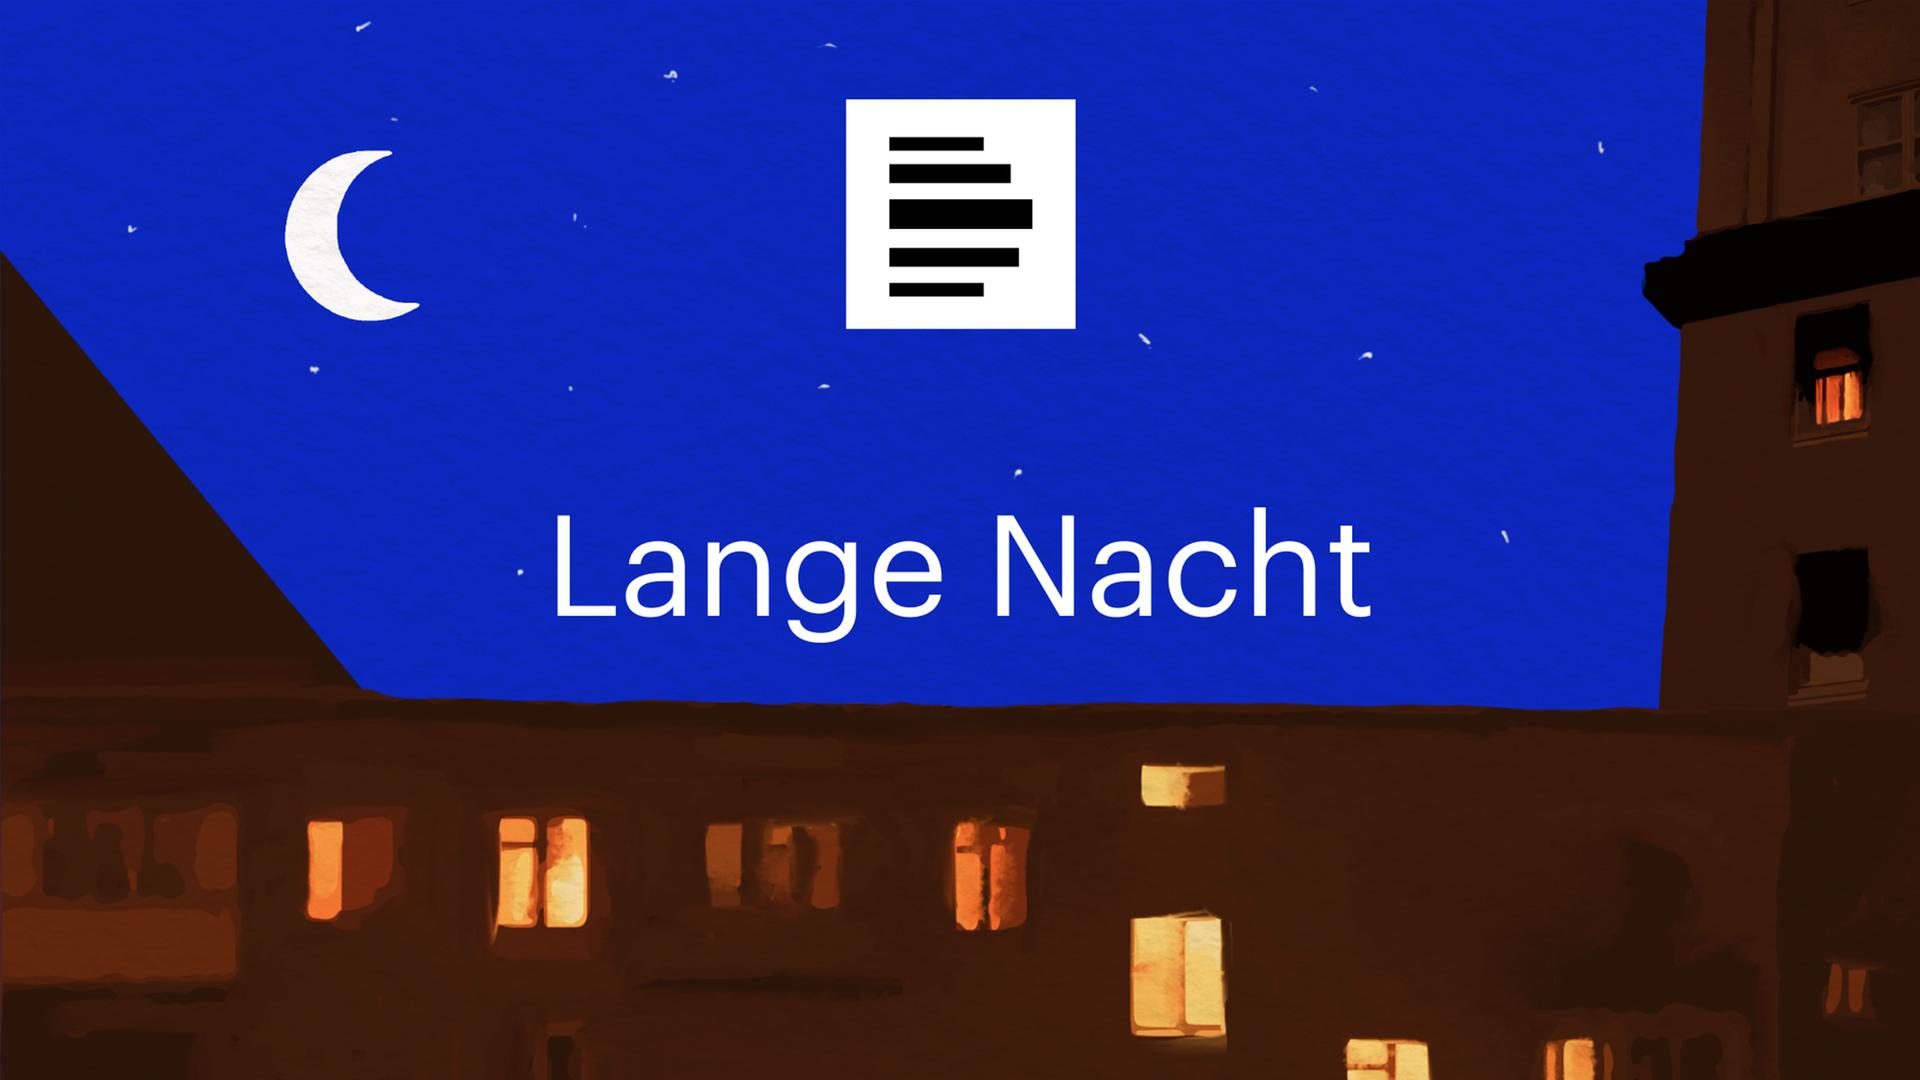 Das Logo zum Podcast "Lange Nacht" zeigt eine Häuserzeile bei Nacht, in einigen Fenstern brennt Licht. Am Nachthimmel steht eine Mondsichel.